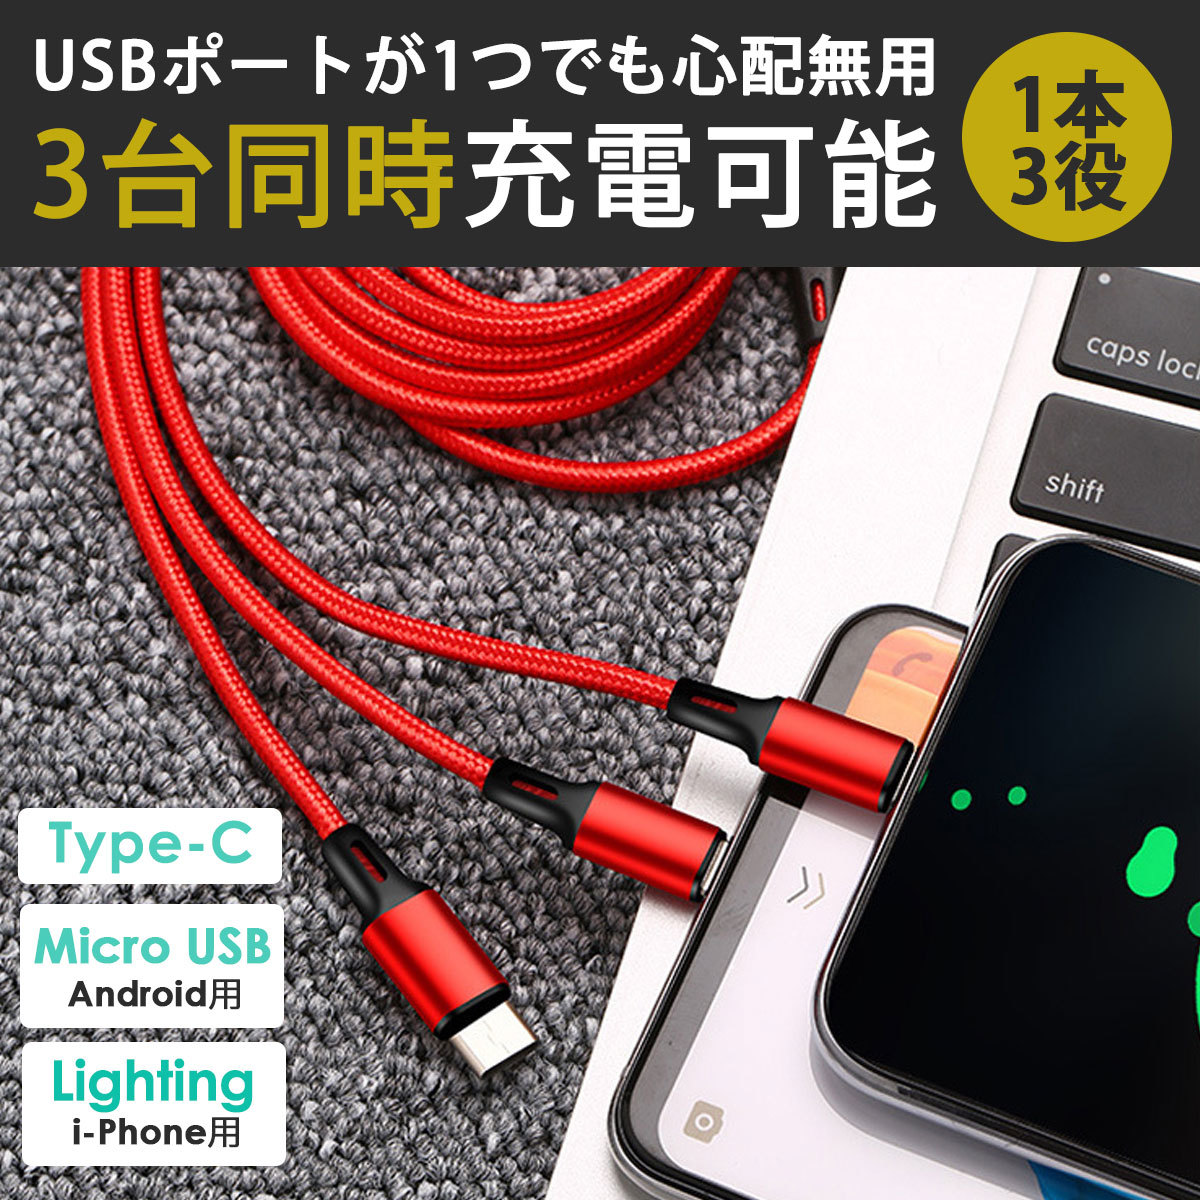 ★3in1 充電ケーブル ブルー★iPhone タイプc type-c Android マイクロ Micro USB 充電器 ケーブル 1m Lightning ライトニング ケーブル_画像3